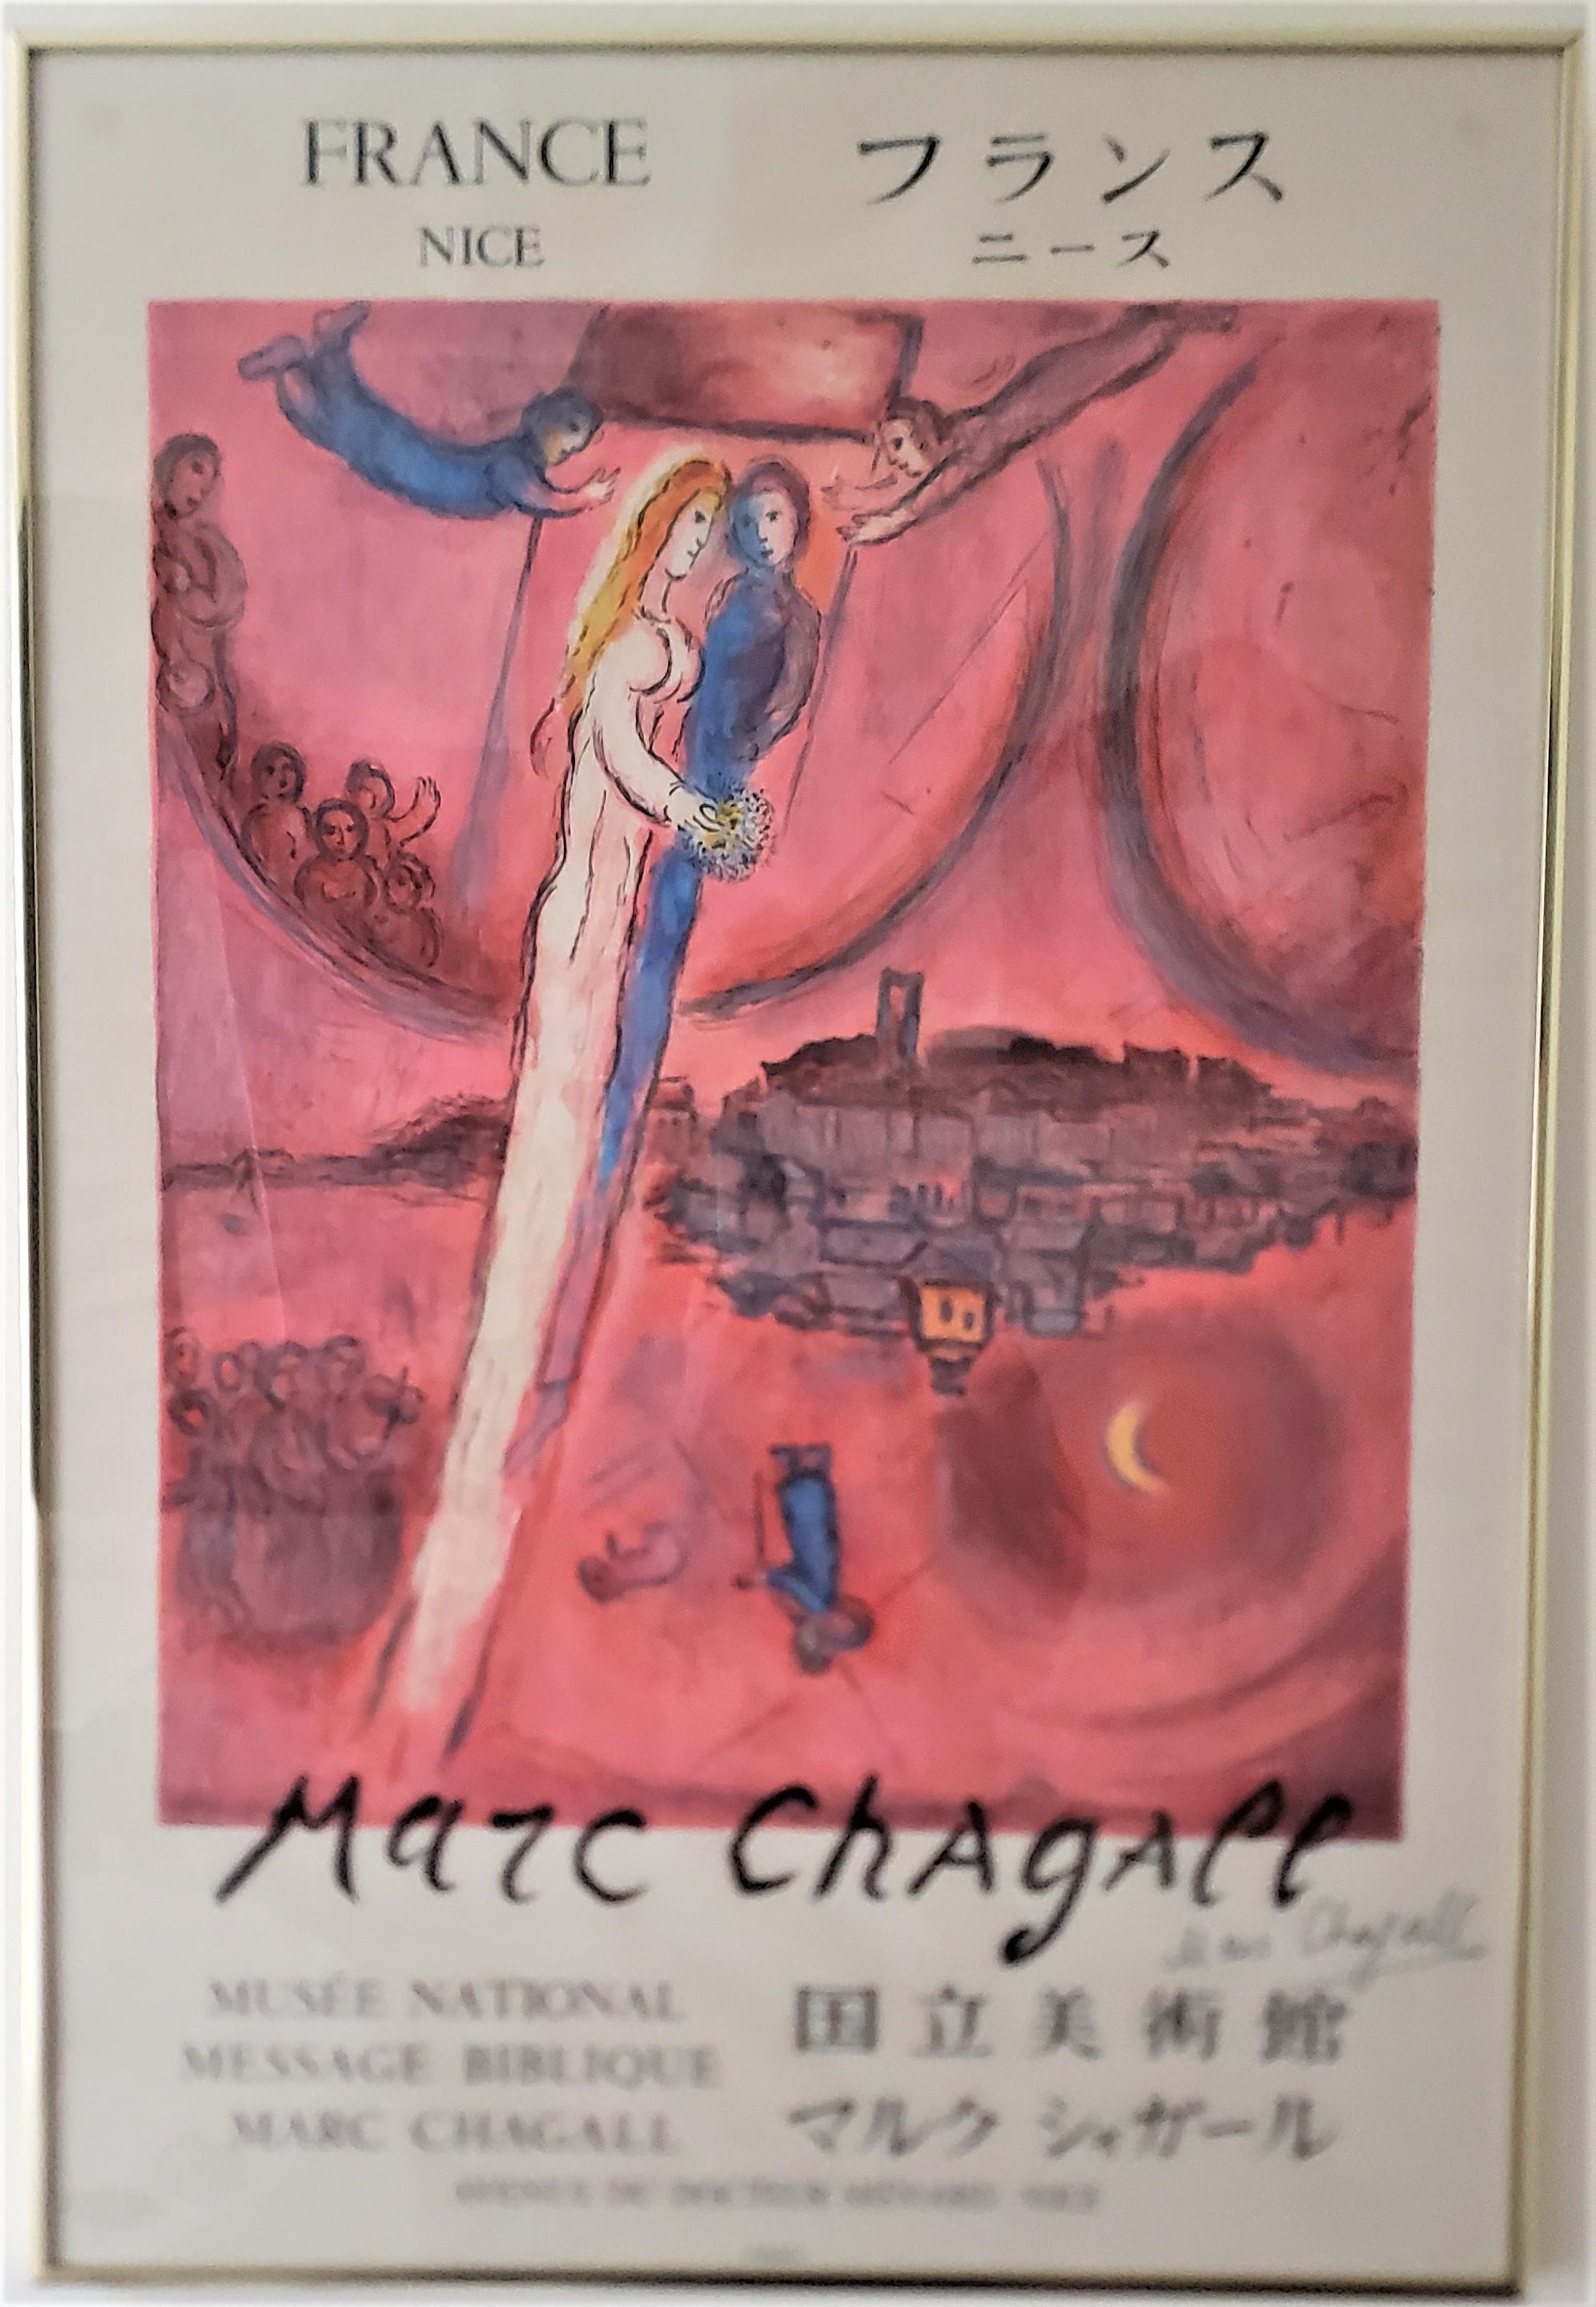 Dieses Originalplakat wurde von Mourlot für das Nationalmuseum von Nizza Frankreich für die Marc Chagall-Ausstellung um 1970 in seinem surrealistischen Stil gedruckt. Diese Lithographie trägt den Titel 